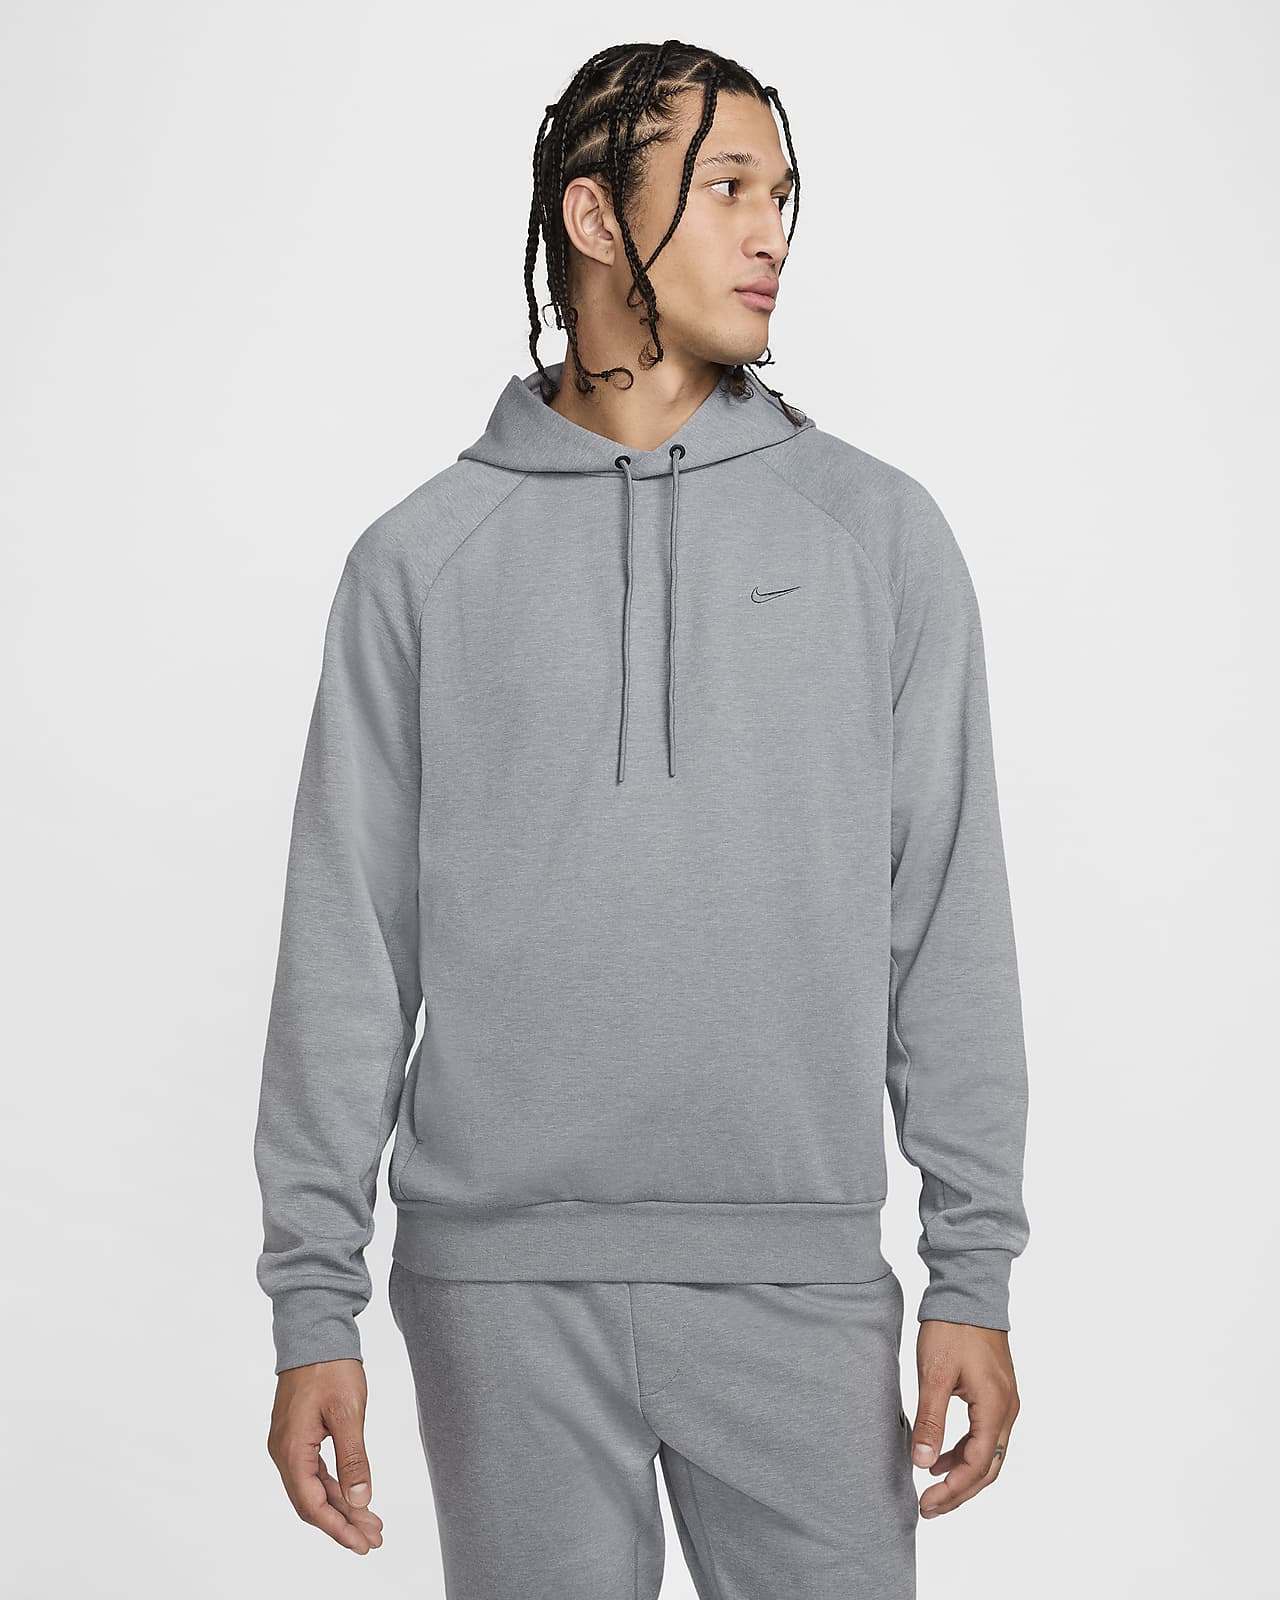 Felpa pullover versatile con cappuccio Dri-FIT UV Nike Primary – Uomo